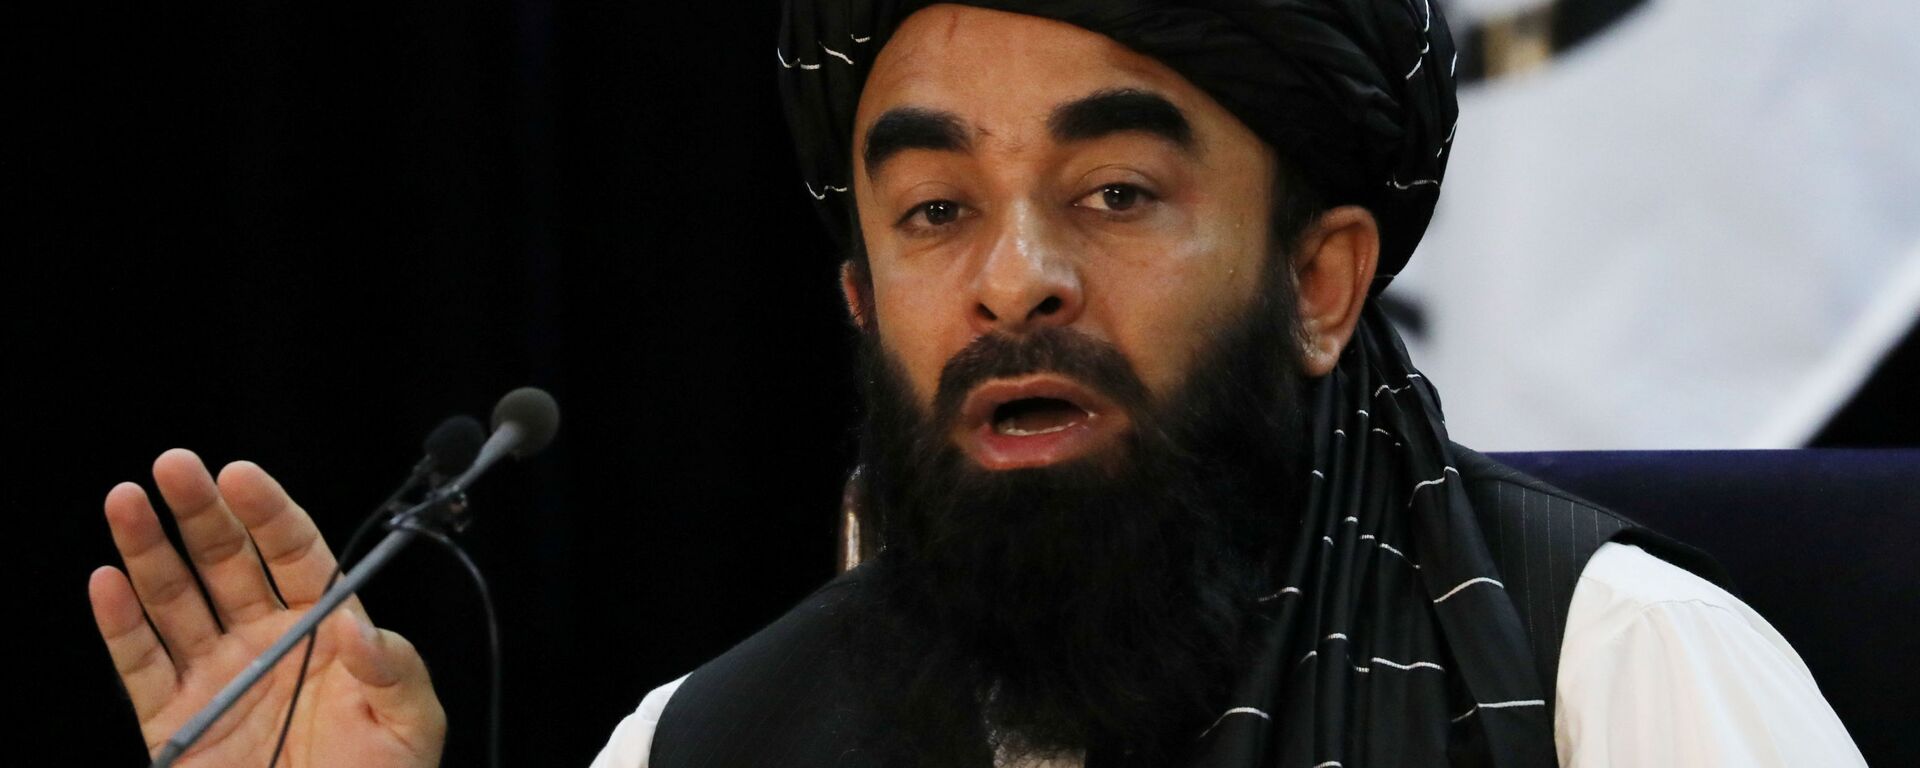 ممثل حركة طالبان (المحظورة في روسيا) ذبيح الله مجاهد في كابول، أفغانستان 6 سبتمبر 2021 - سبوتنيك عربي, 1920, 24.09.2021